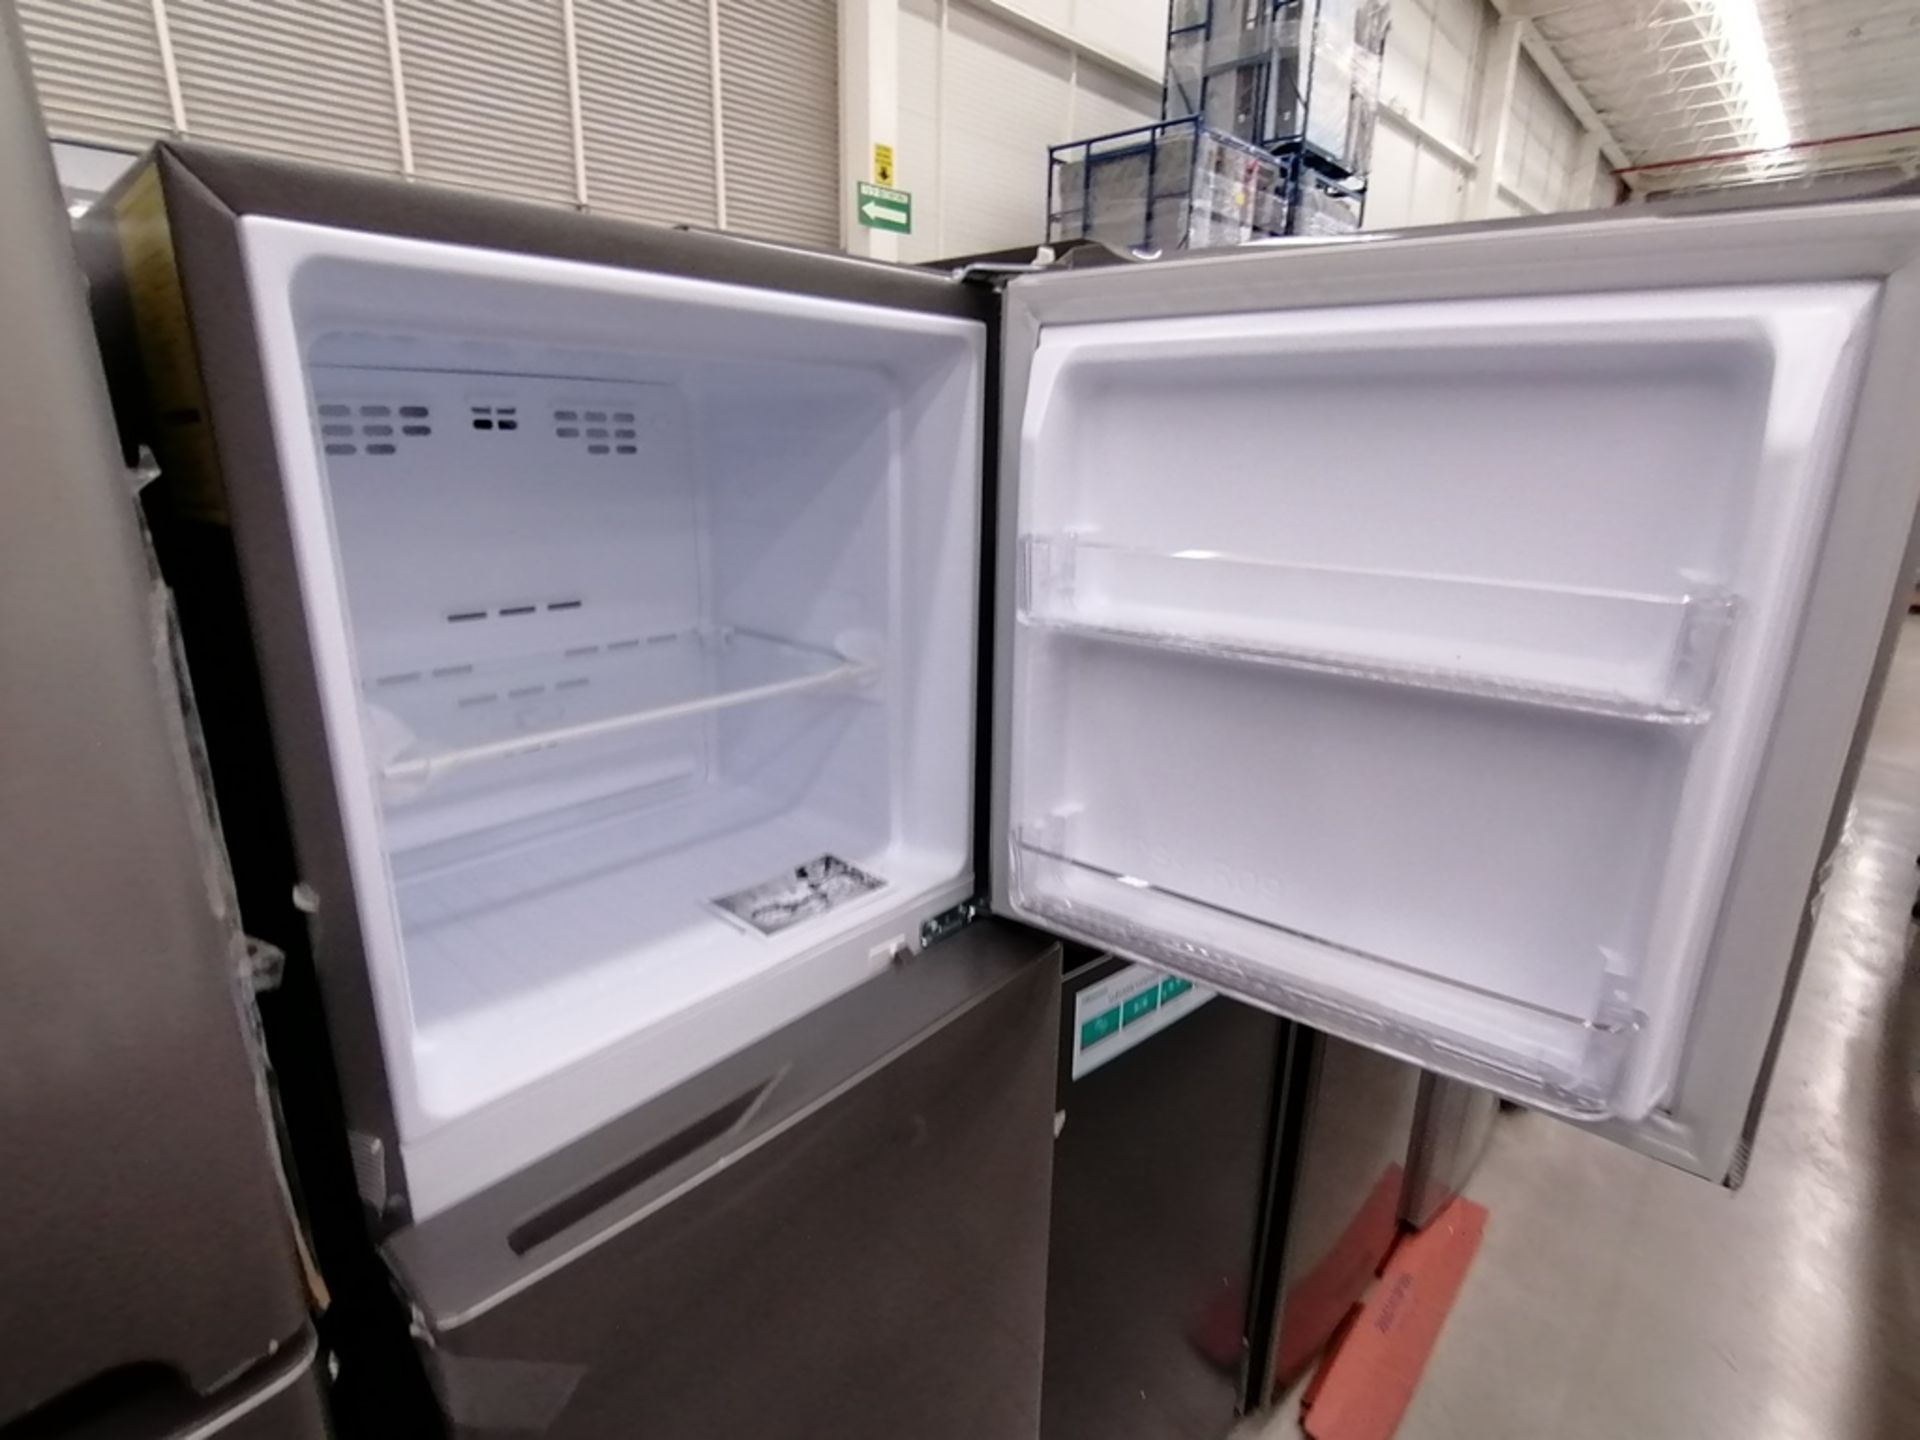 Lote de 2 refrigeradores incluye: 1 Refrigerador, Marca Winia, Modelo DFR25210GN, Serie MR21ZN08401 - Image 4 of 15